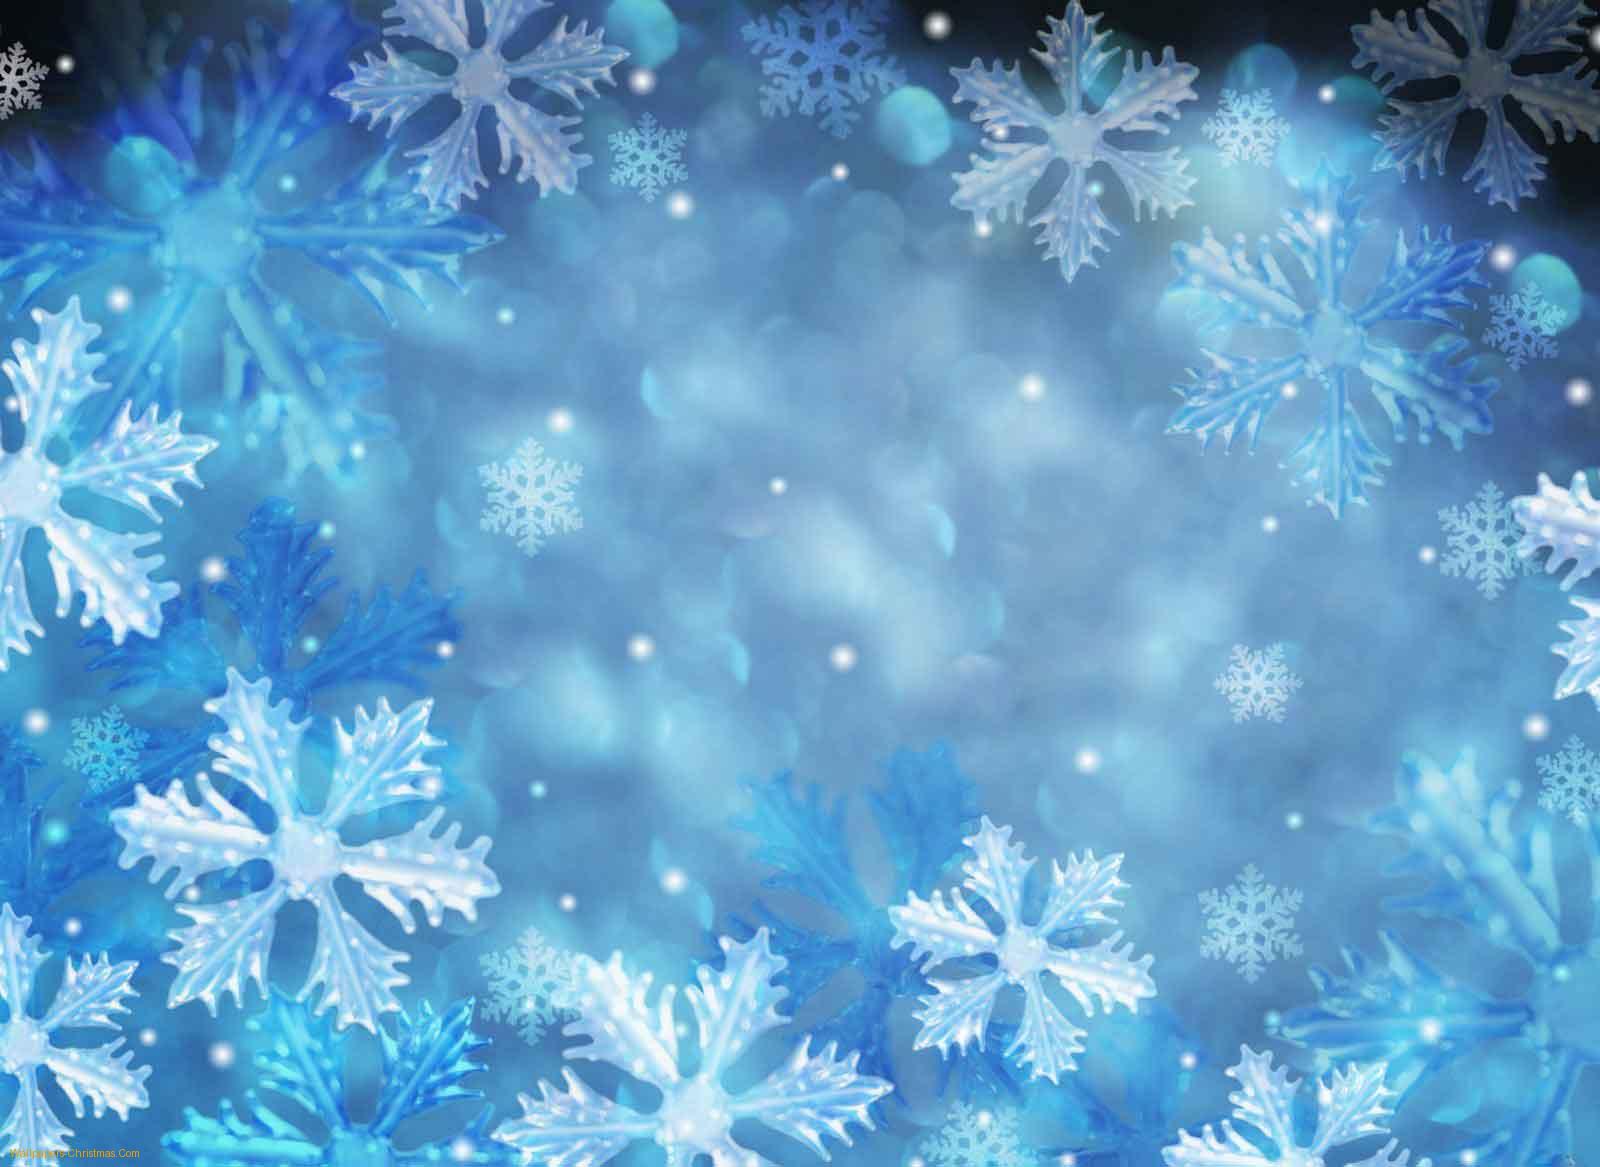 Animated Christmas Snow Wallpaper - WallpaperSafari